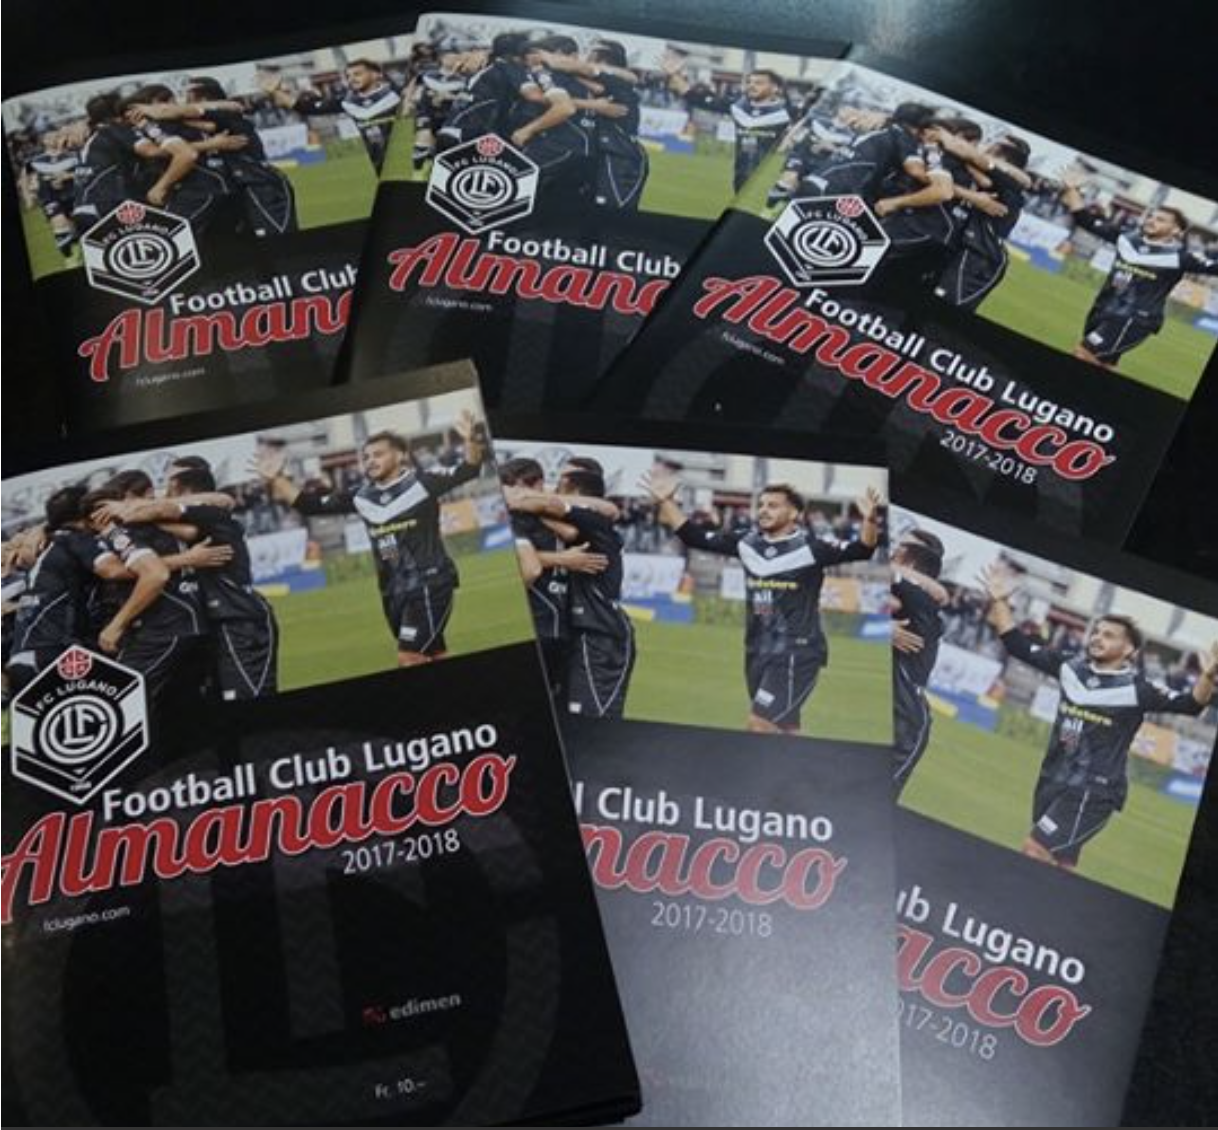 Ultime copie in vendita dell'Almanacco FC Lugano